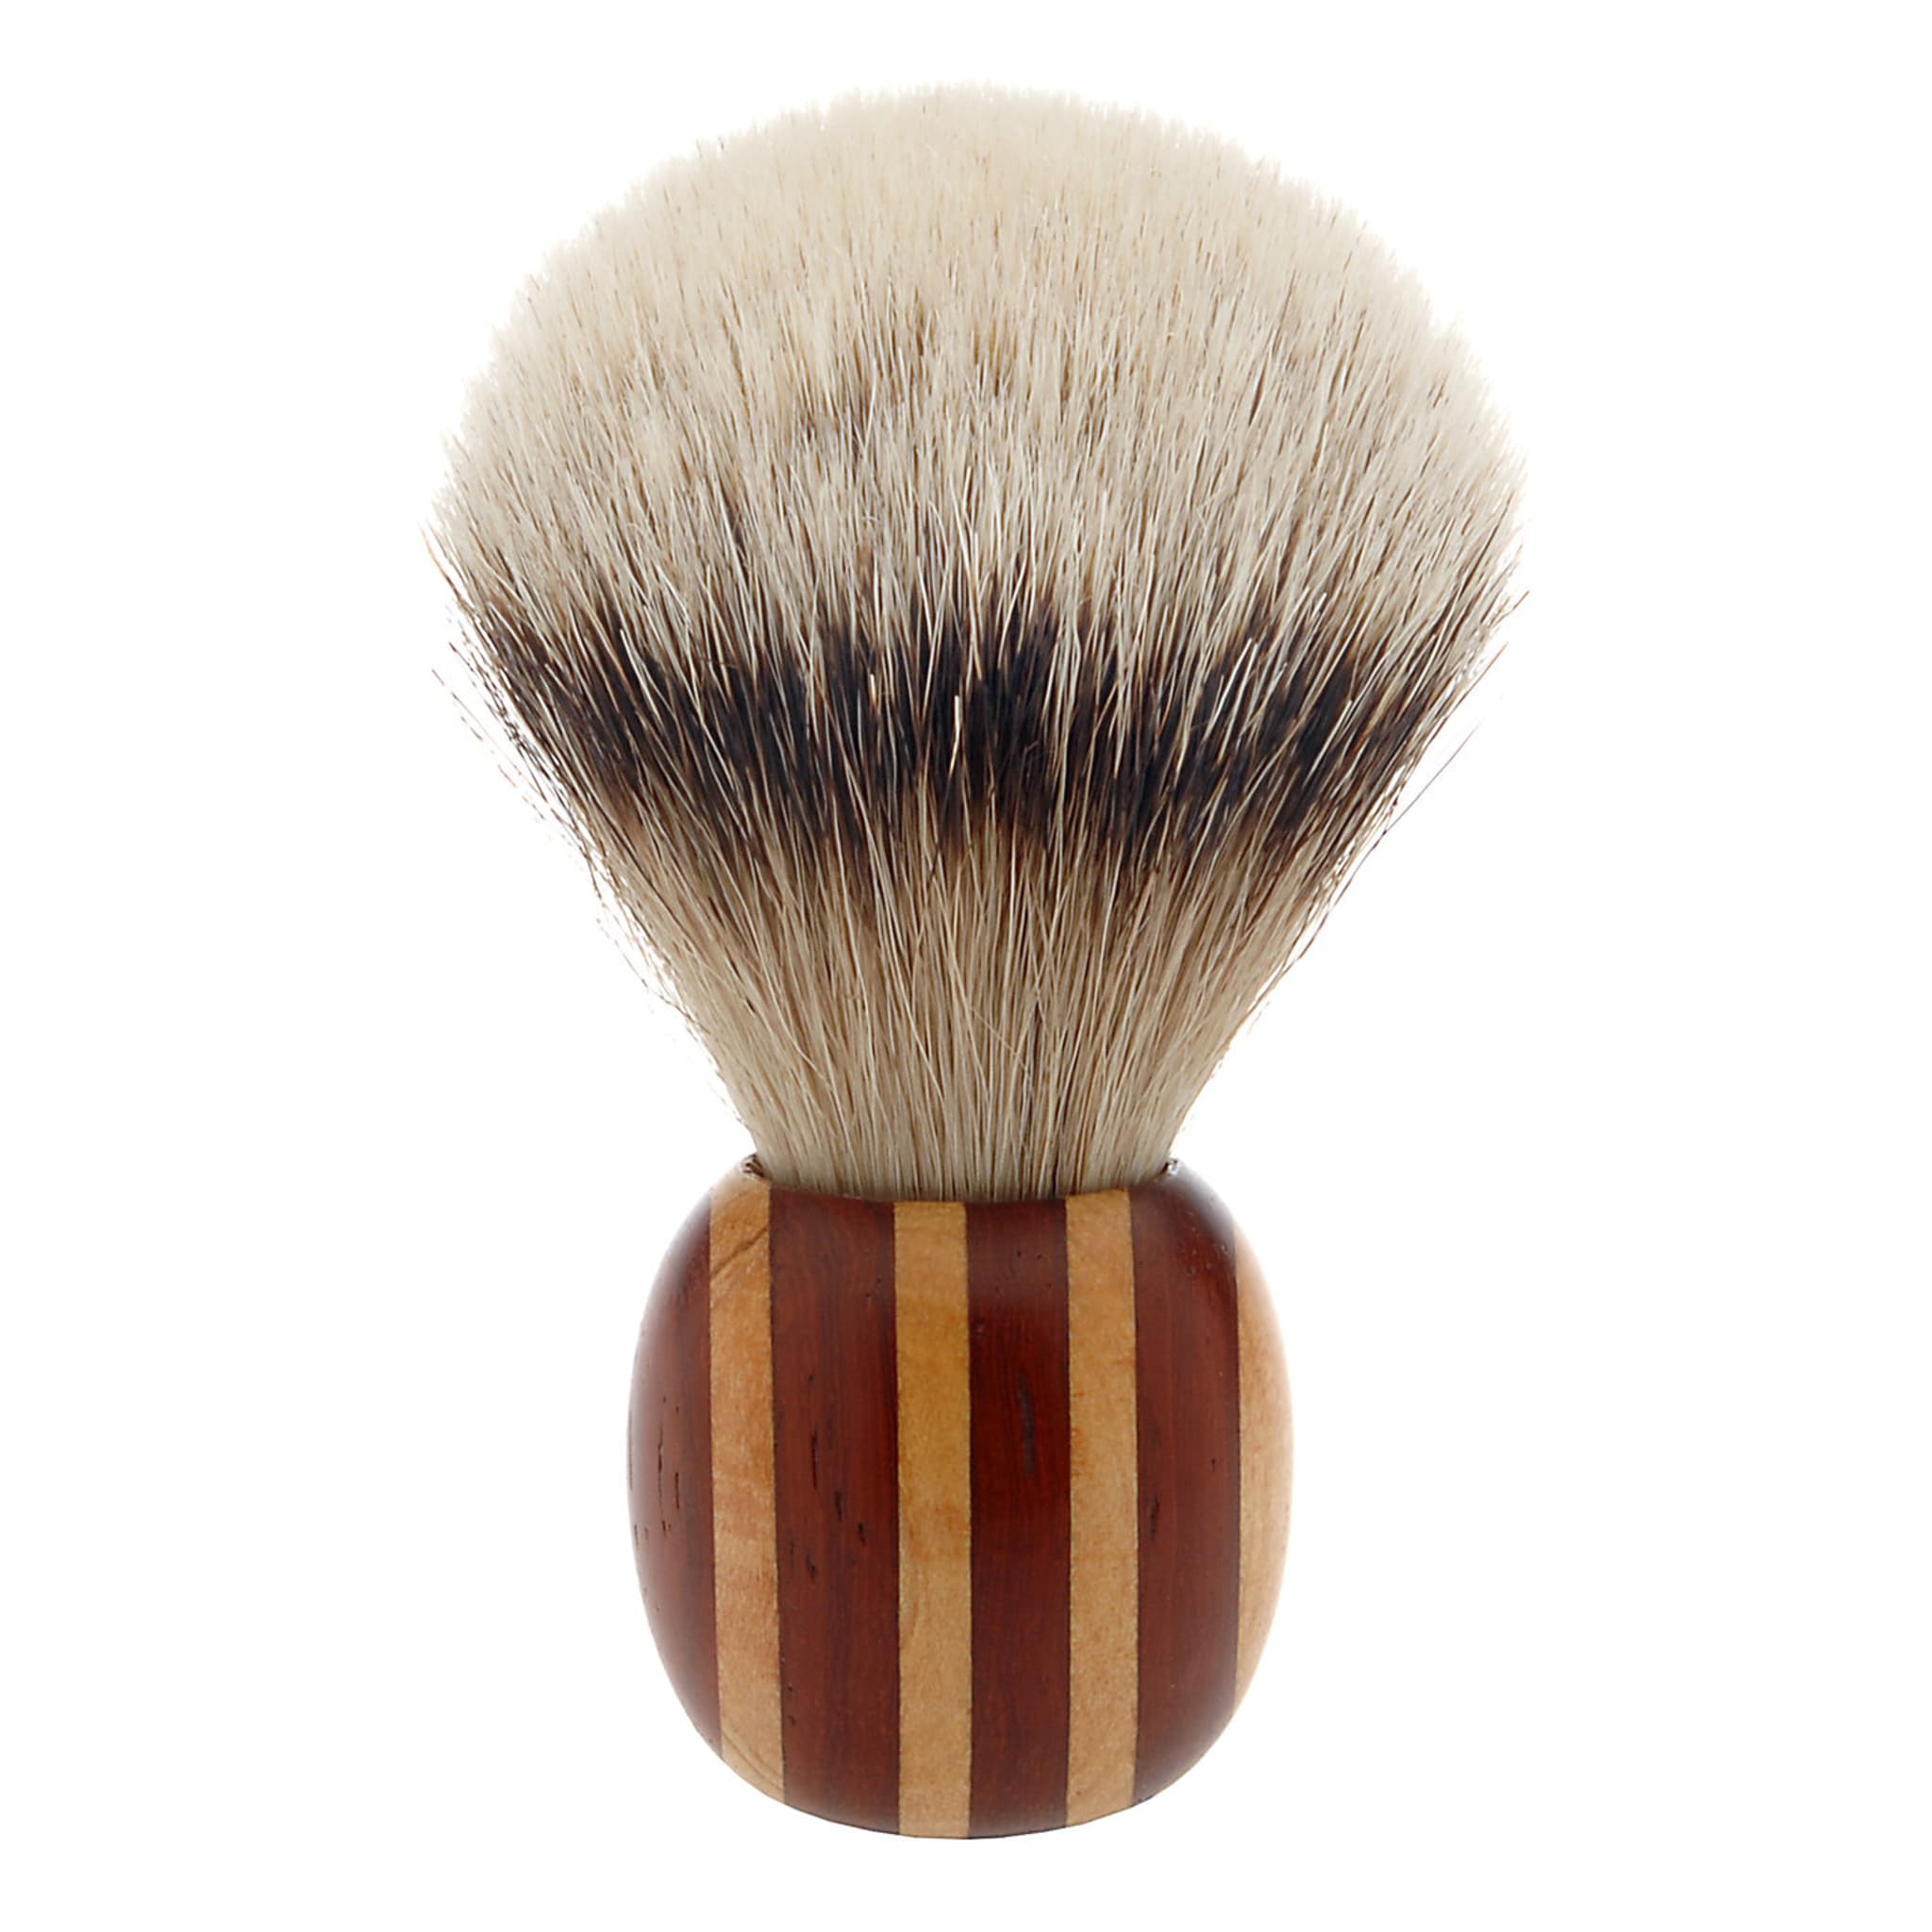 Short Shaving Brush in Maple and Padauk Wood - Alternative view 1